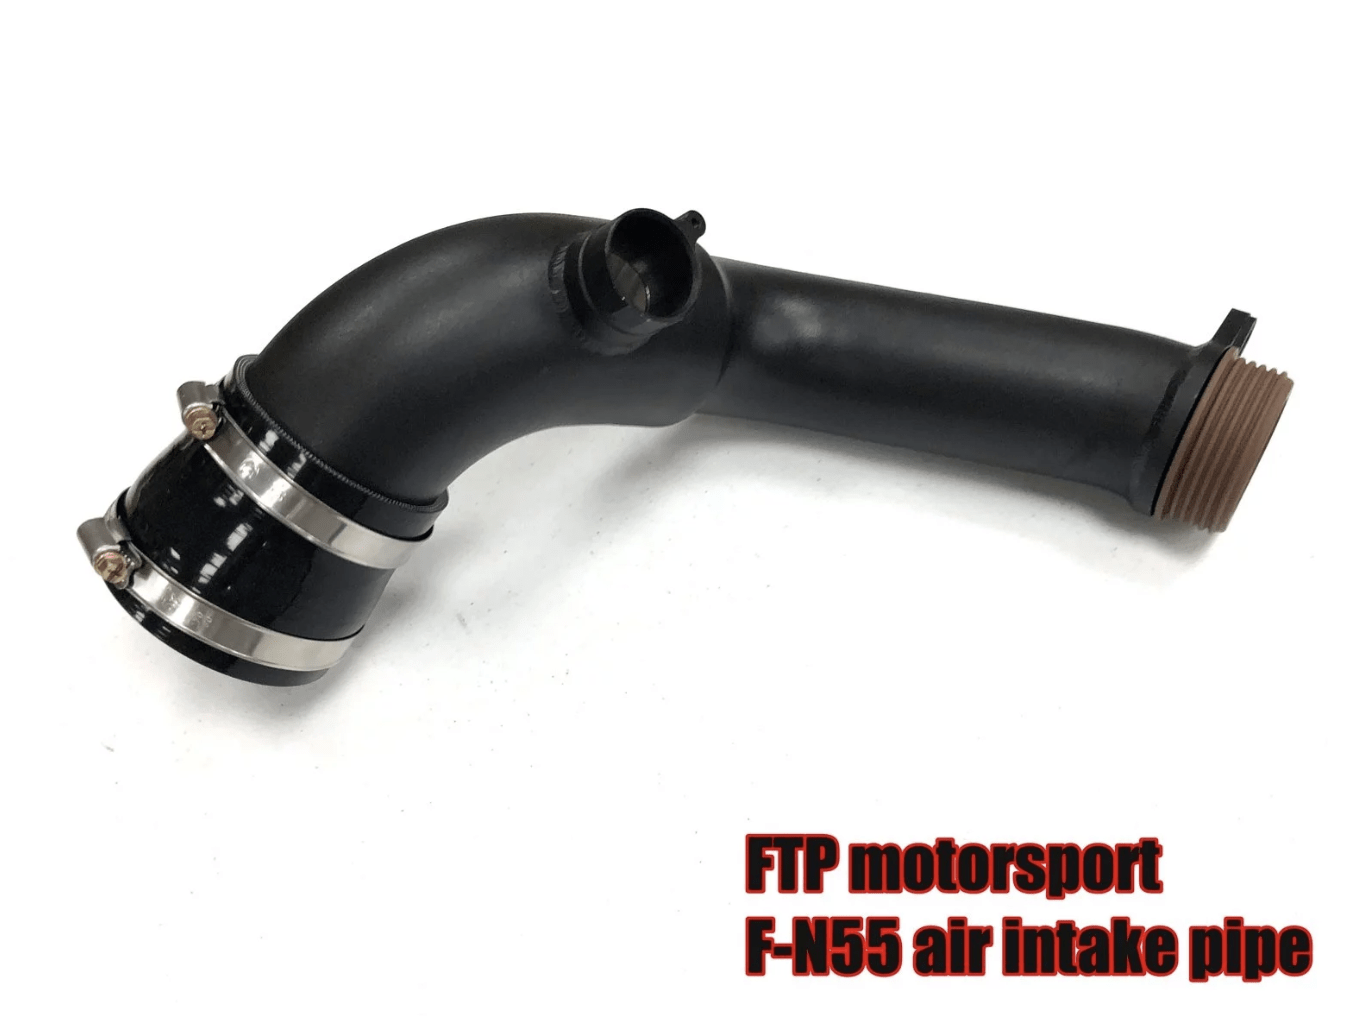 Kies-Motorsports FTP Motorsport FTP F3x N55 Air Intake Inlet Pipe (F Series: M135, M235, N55 M2, 335, 435, M235)